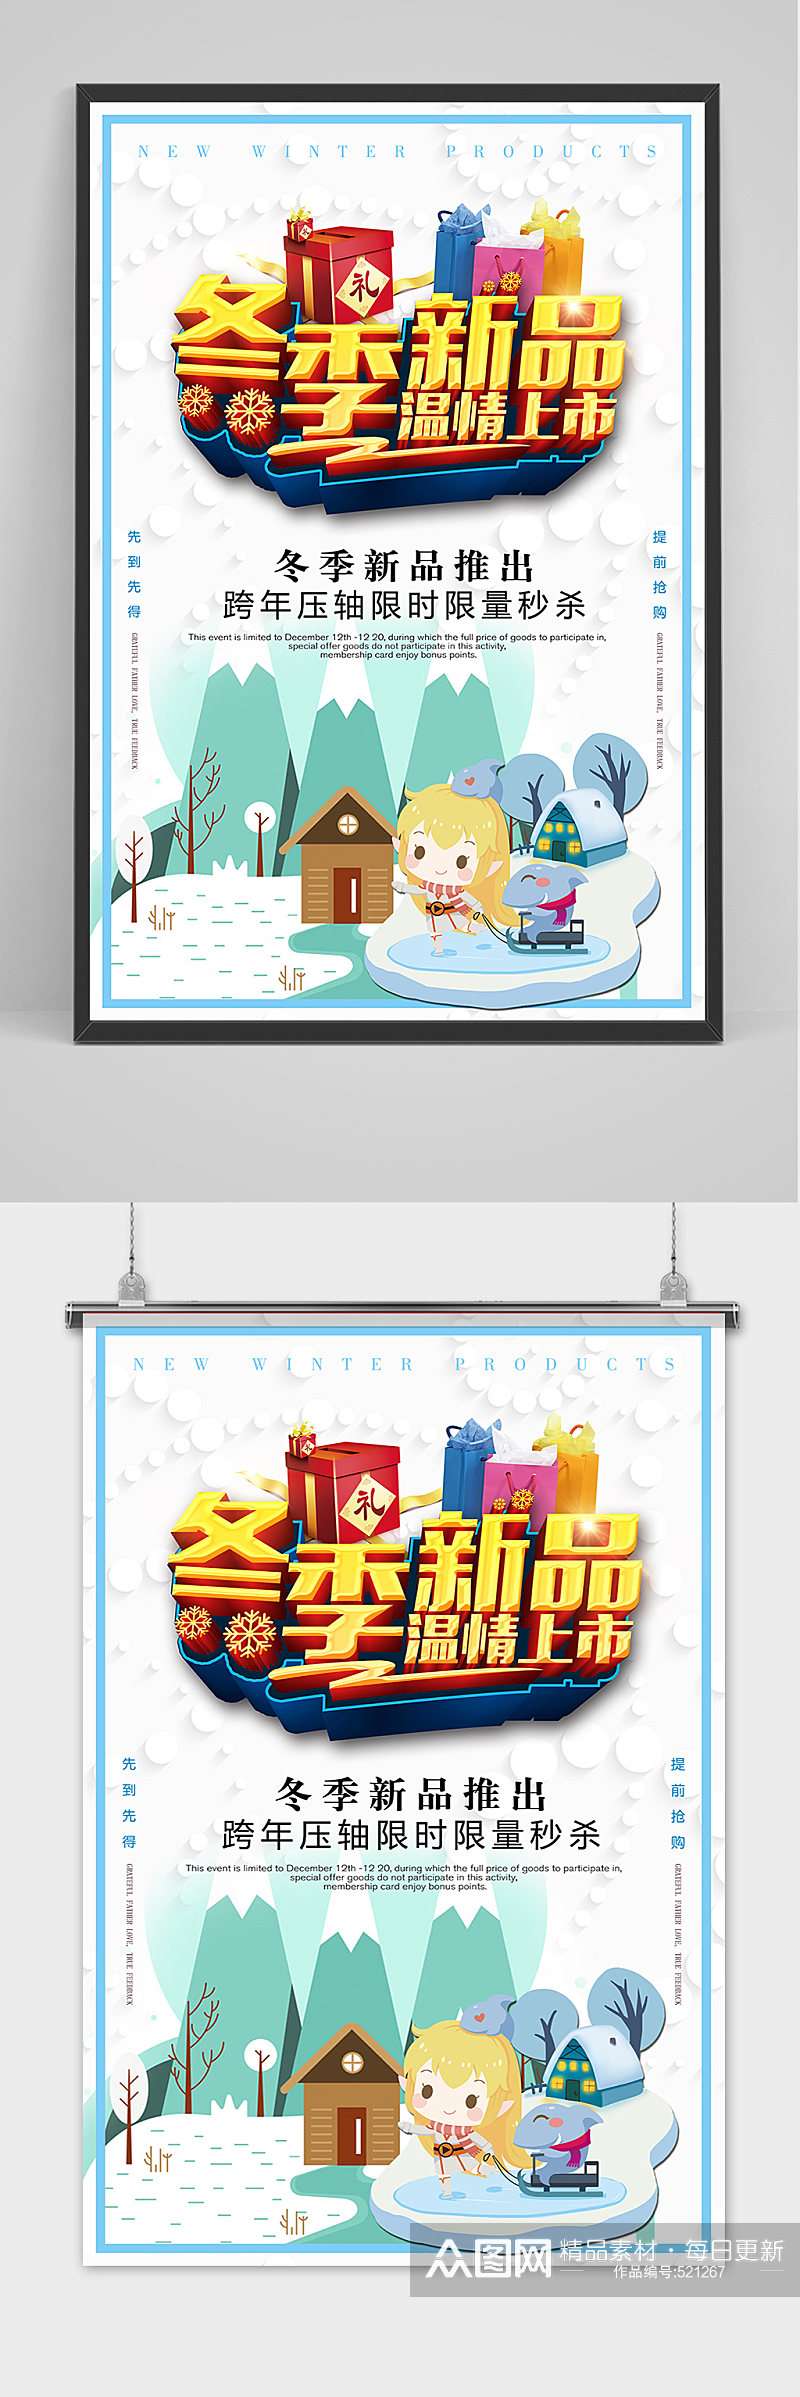 立体冬季新品促销海报设计素材